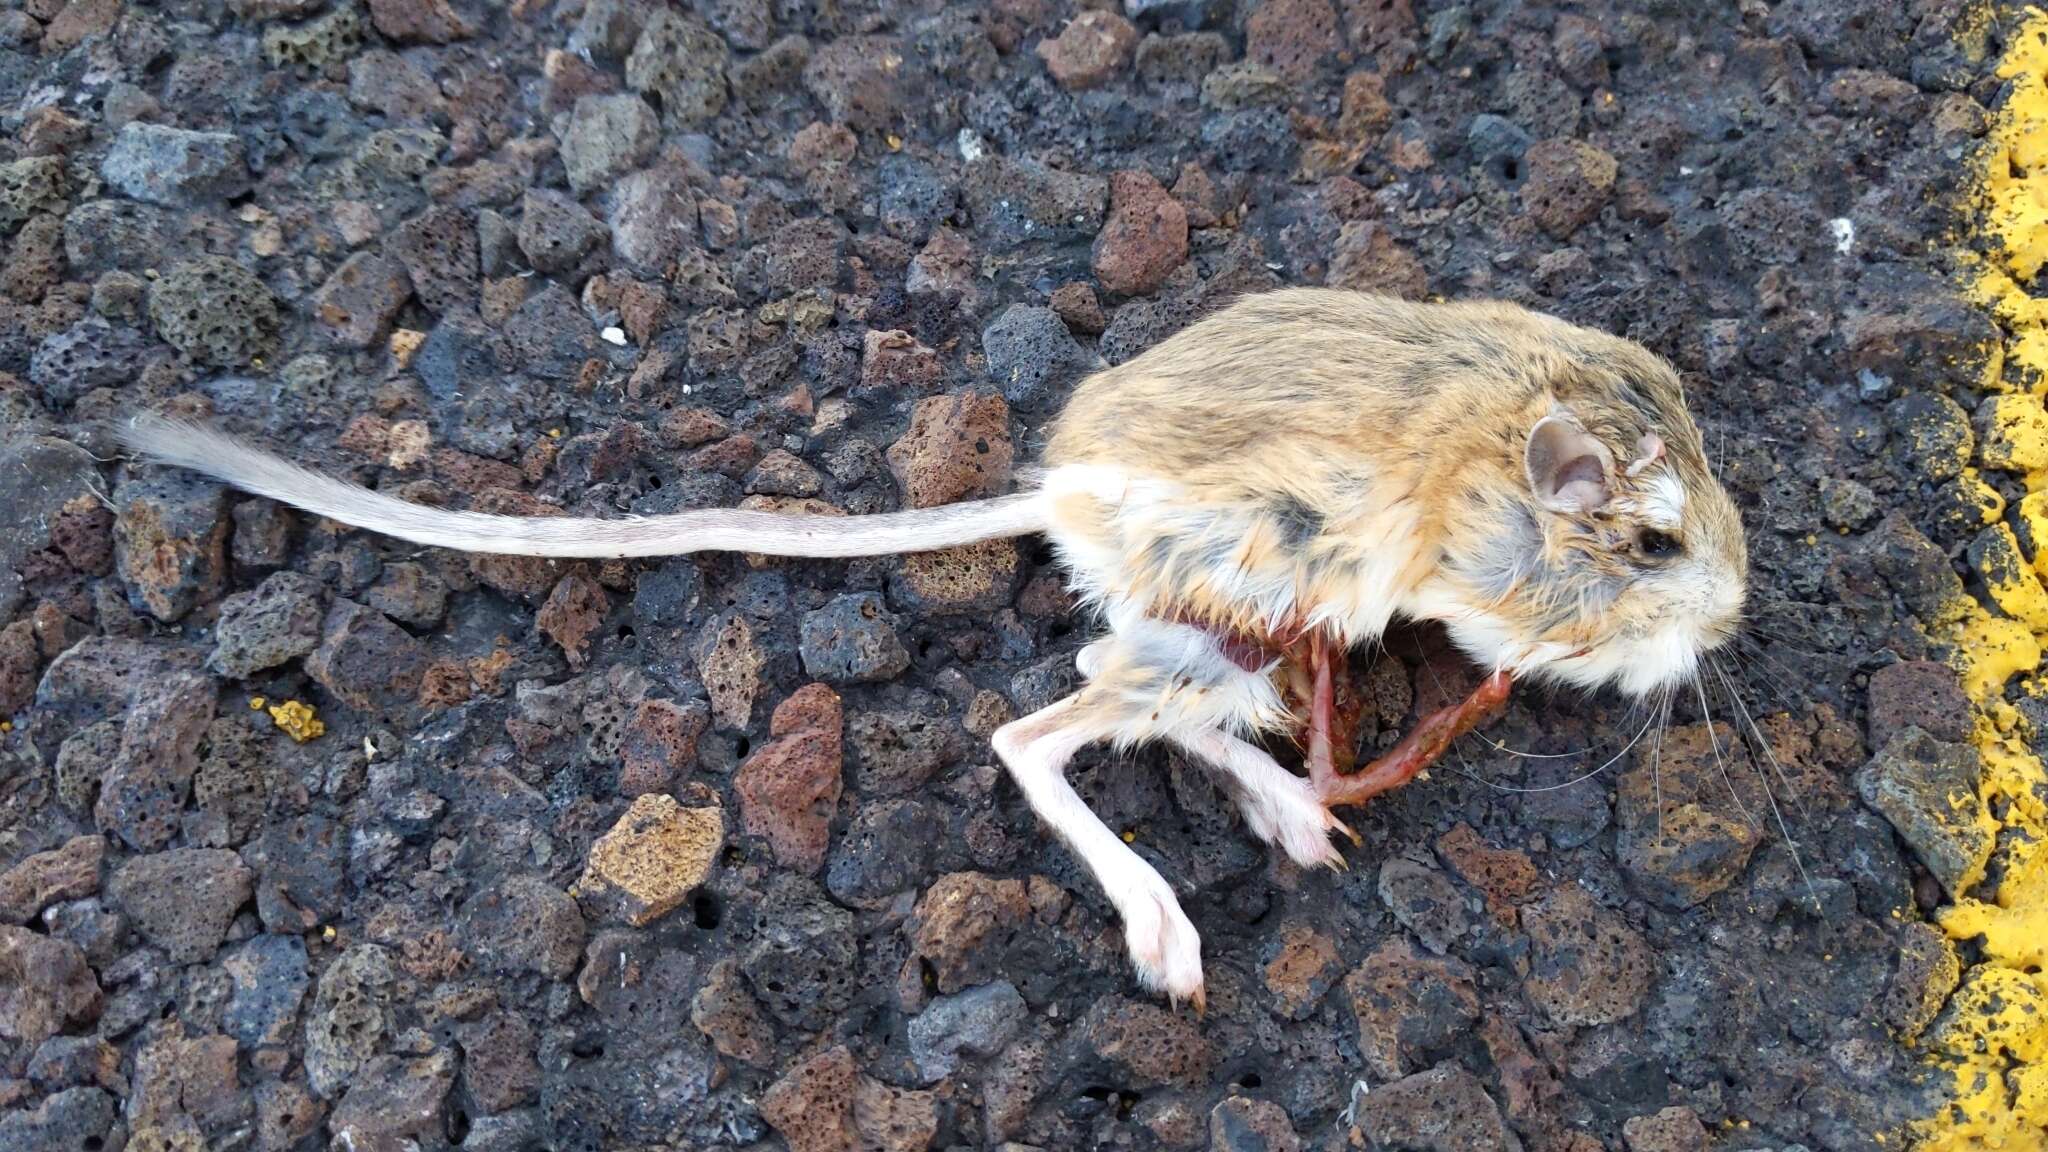 Image of Ord's Kangaroo Rat